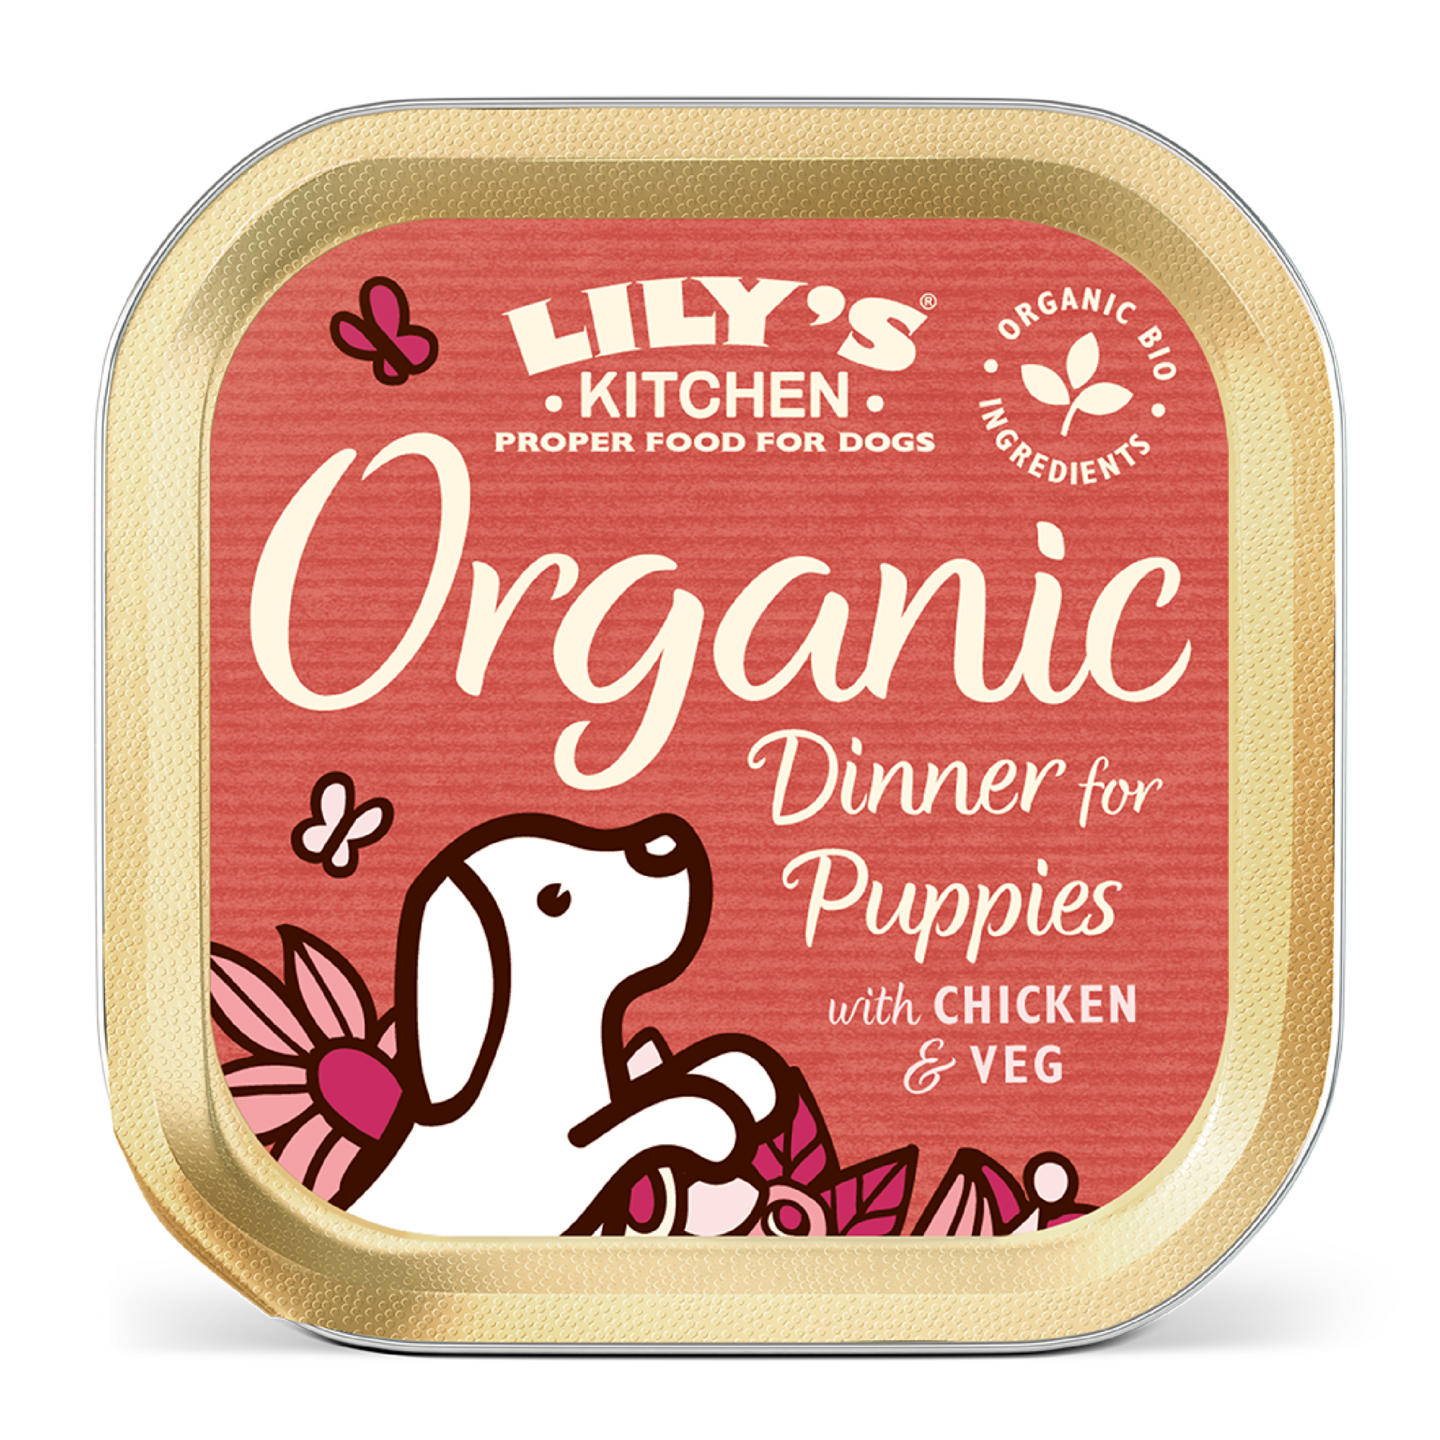 Lilys Kitchen 150g Organic Dinner for puppies koiranruoka kana luomu